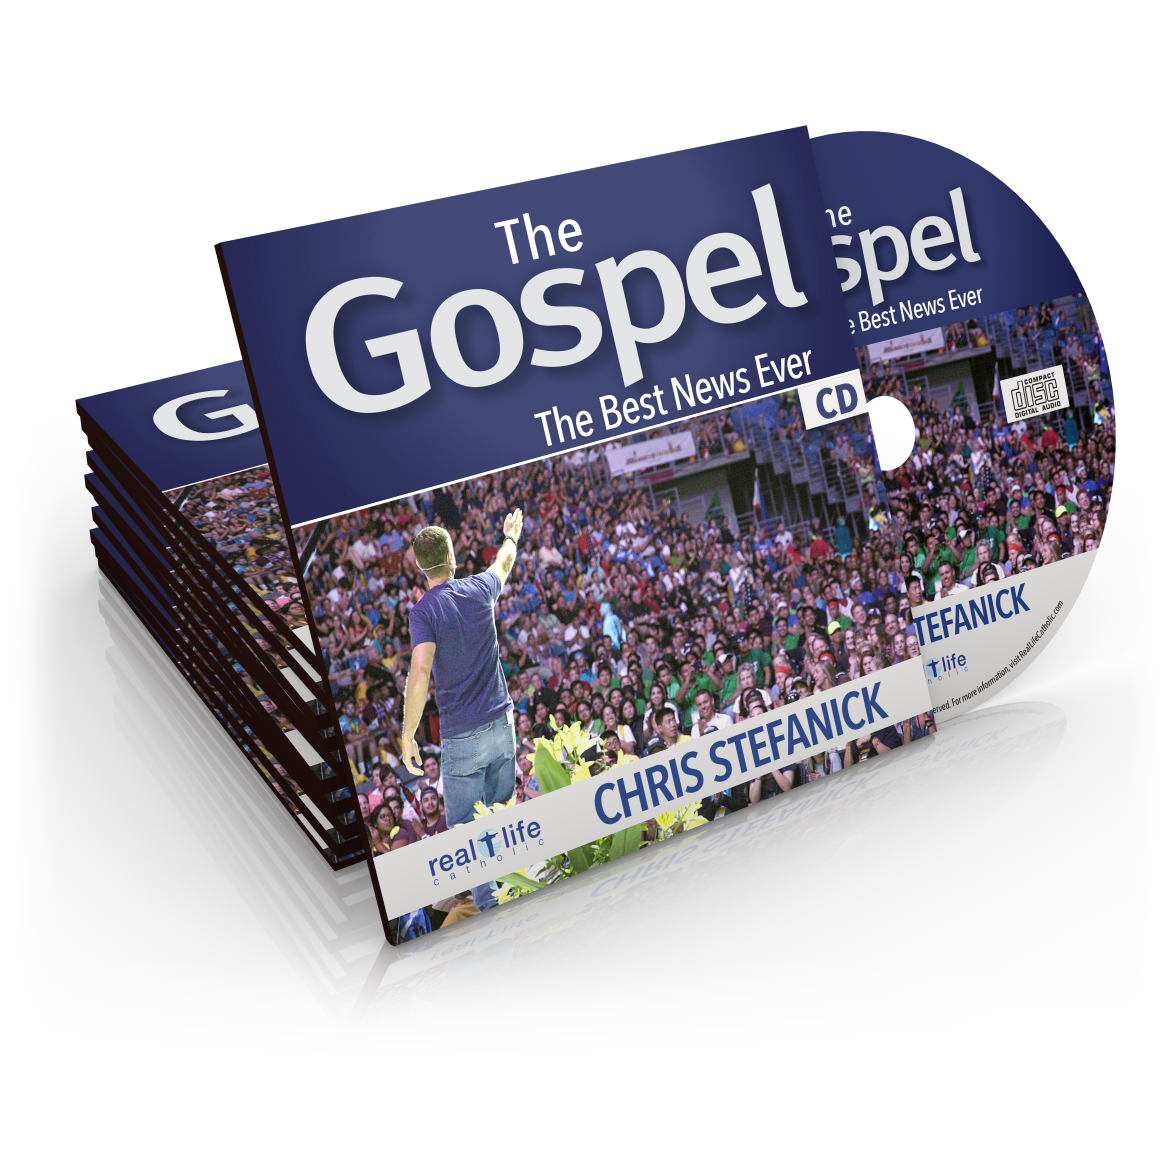 Order "The Gospel" 10-Pack